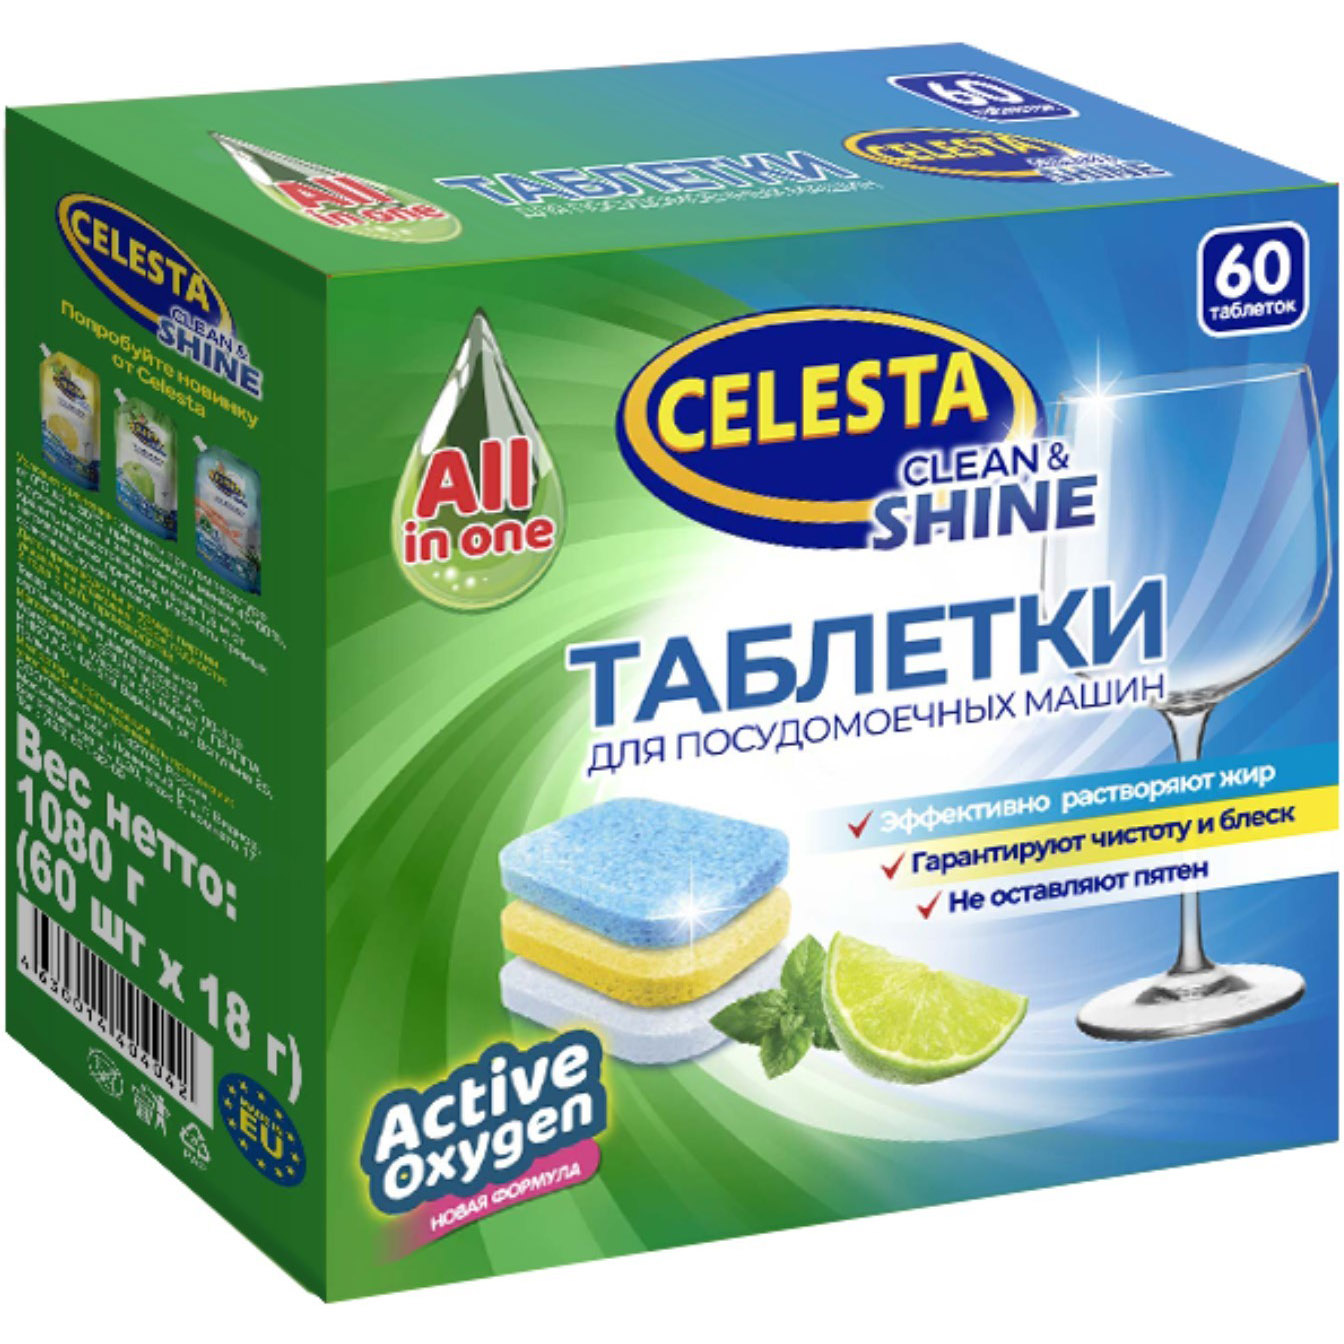 Таблетки для посудомоечных машин Celesta Clean & shine Трехслойные 60 шт пленка пищевая celesta 20 м